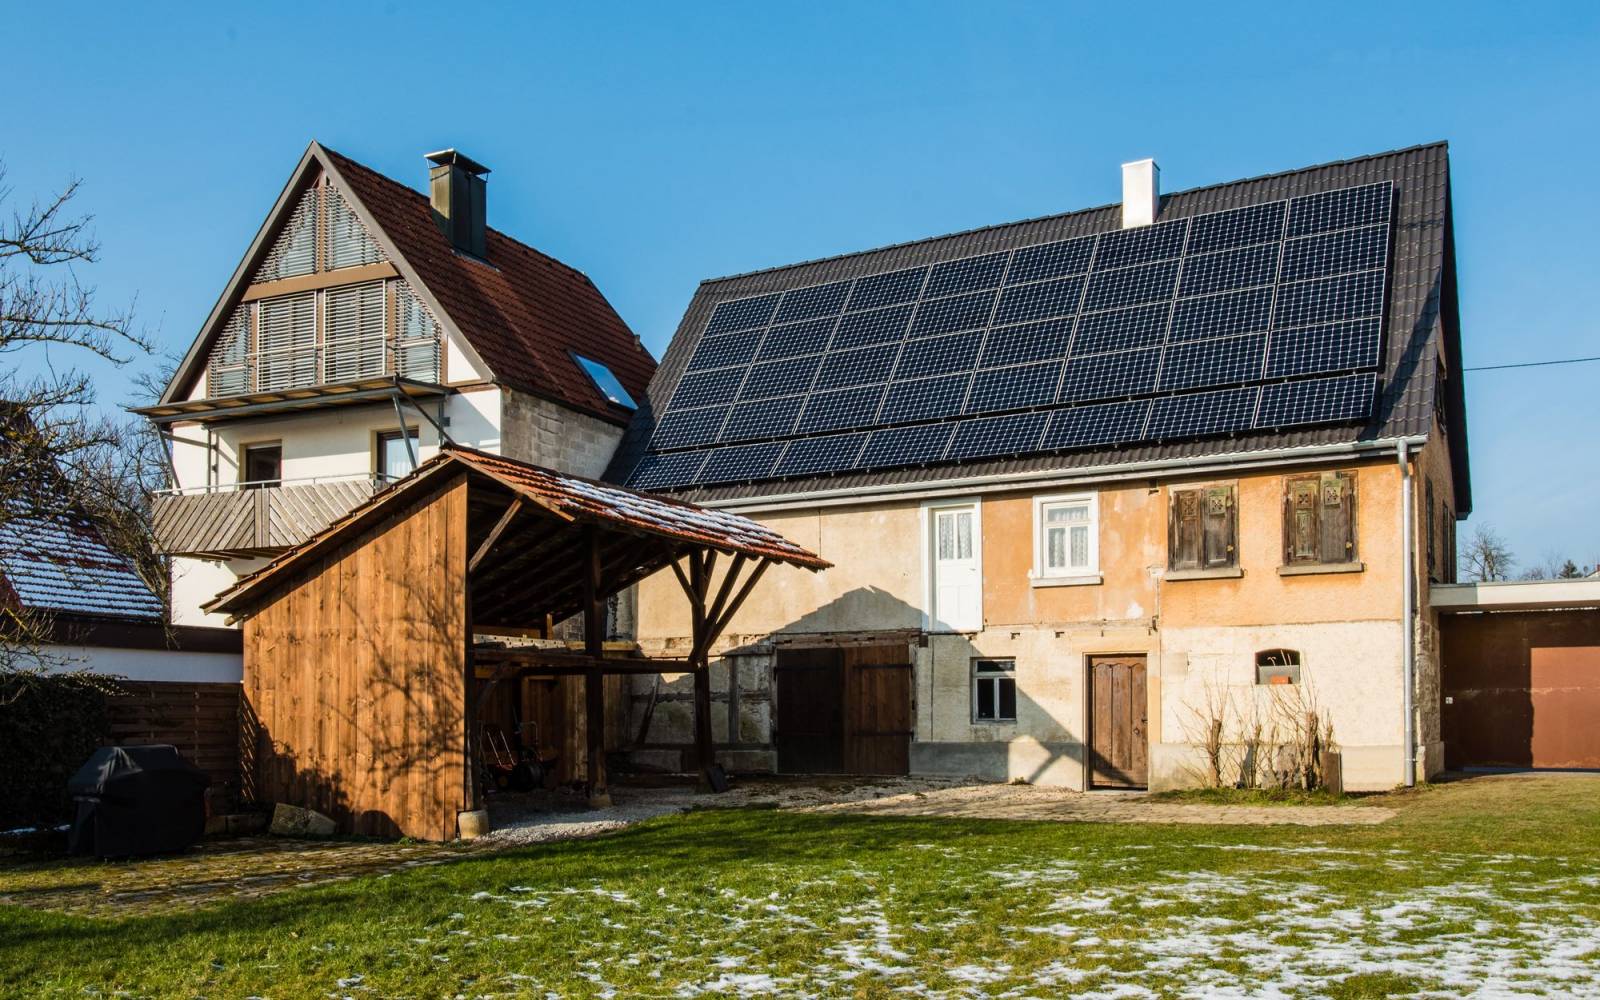 Bauernhaus mit Solarzellen auf dem Dach